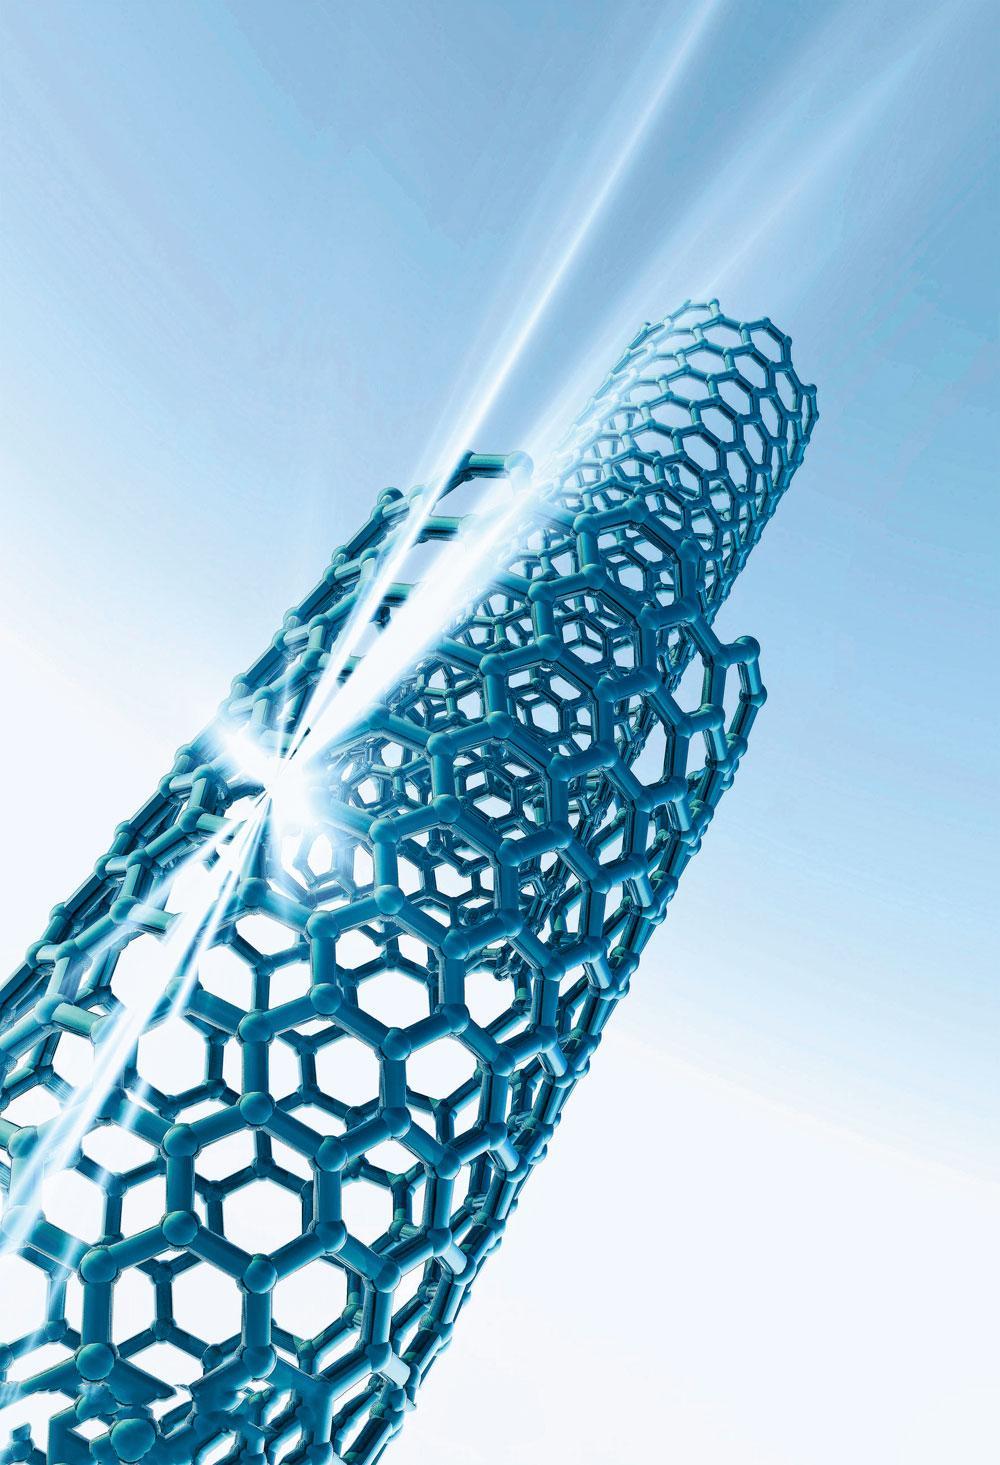 Les nanotubes de carbone (photo) ou les nanofils de carbone sont deux matériaux révolutionnaires. Ils pourraient servir à construire le câble de l'ascenseur.